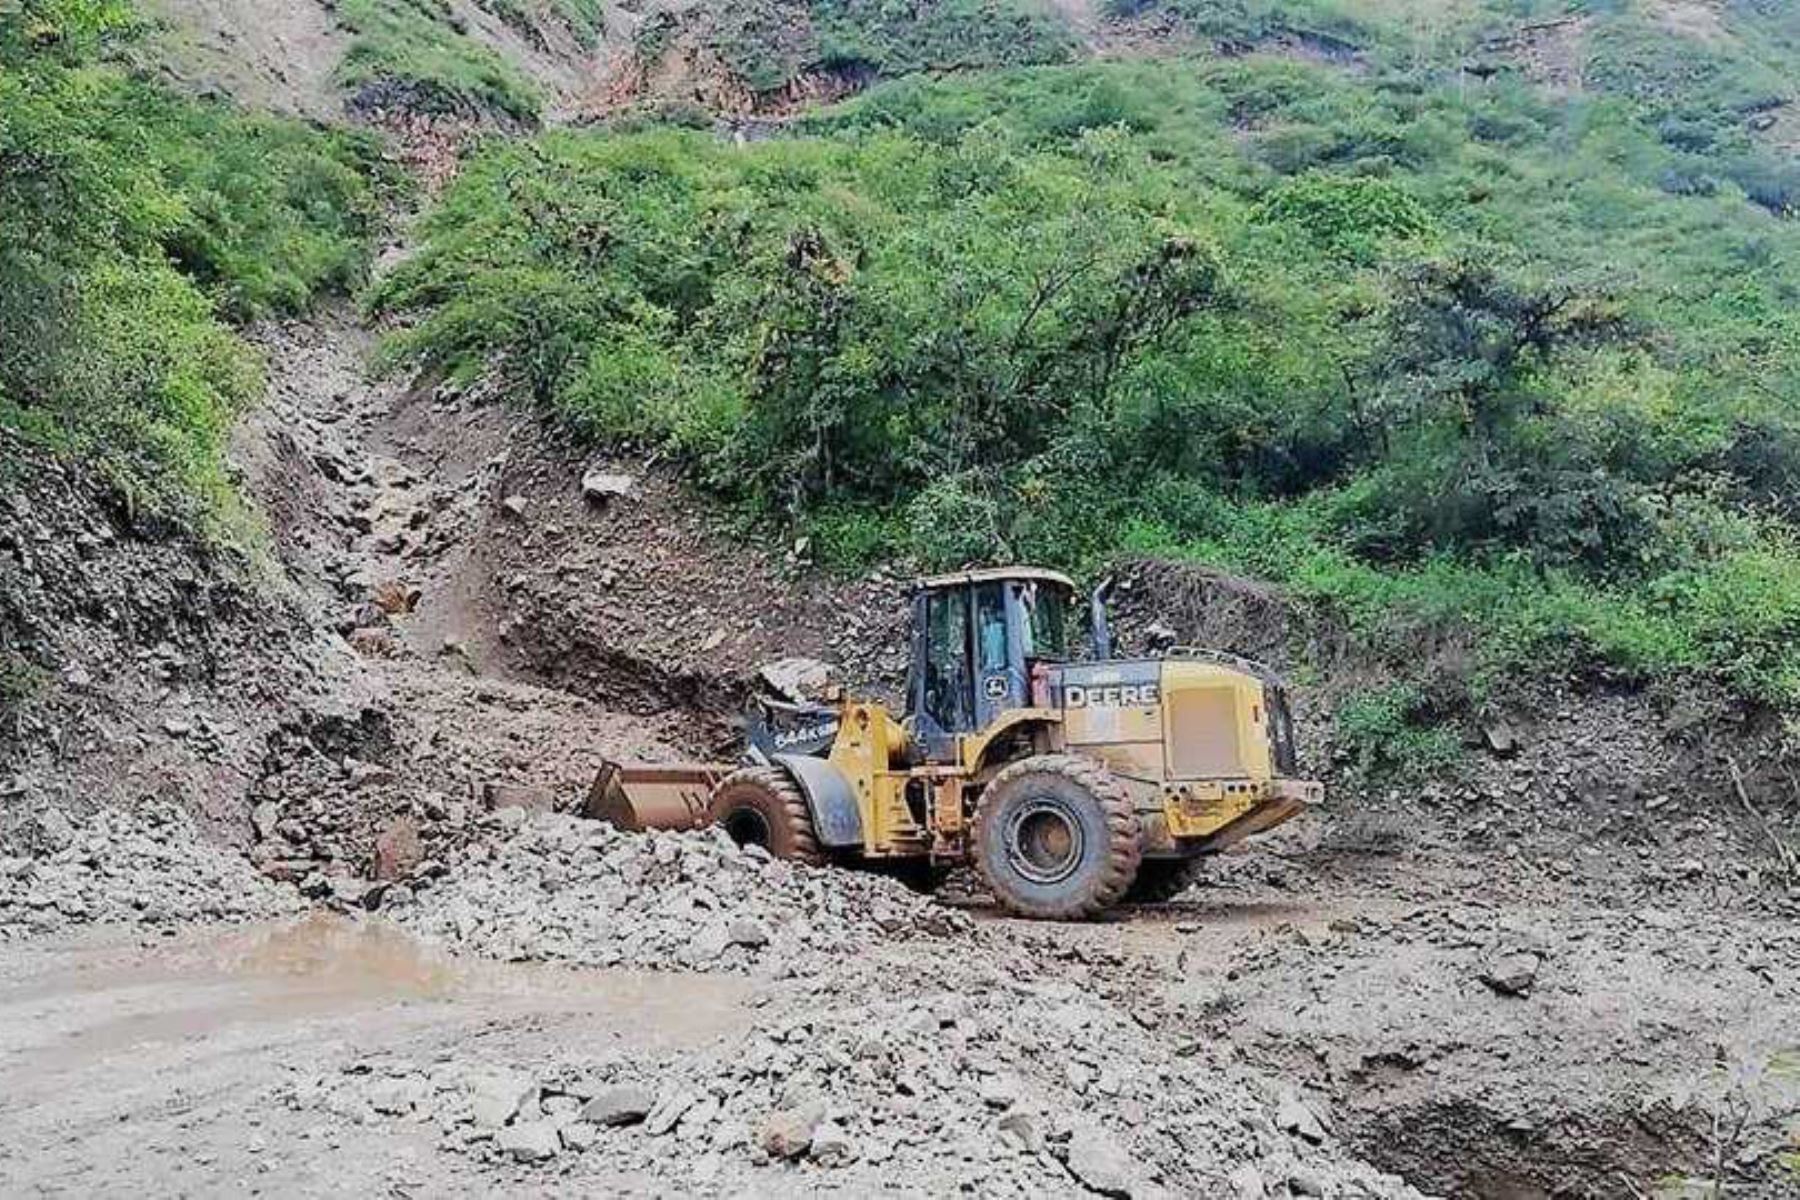 Cinco distritos de la provincia de Pataz, La Libertad, se encuentran aislados por los deslizamientos provocados por las lluvias intensas. ANDINA/Archivo